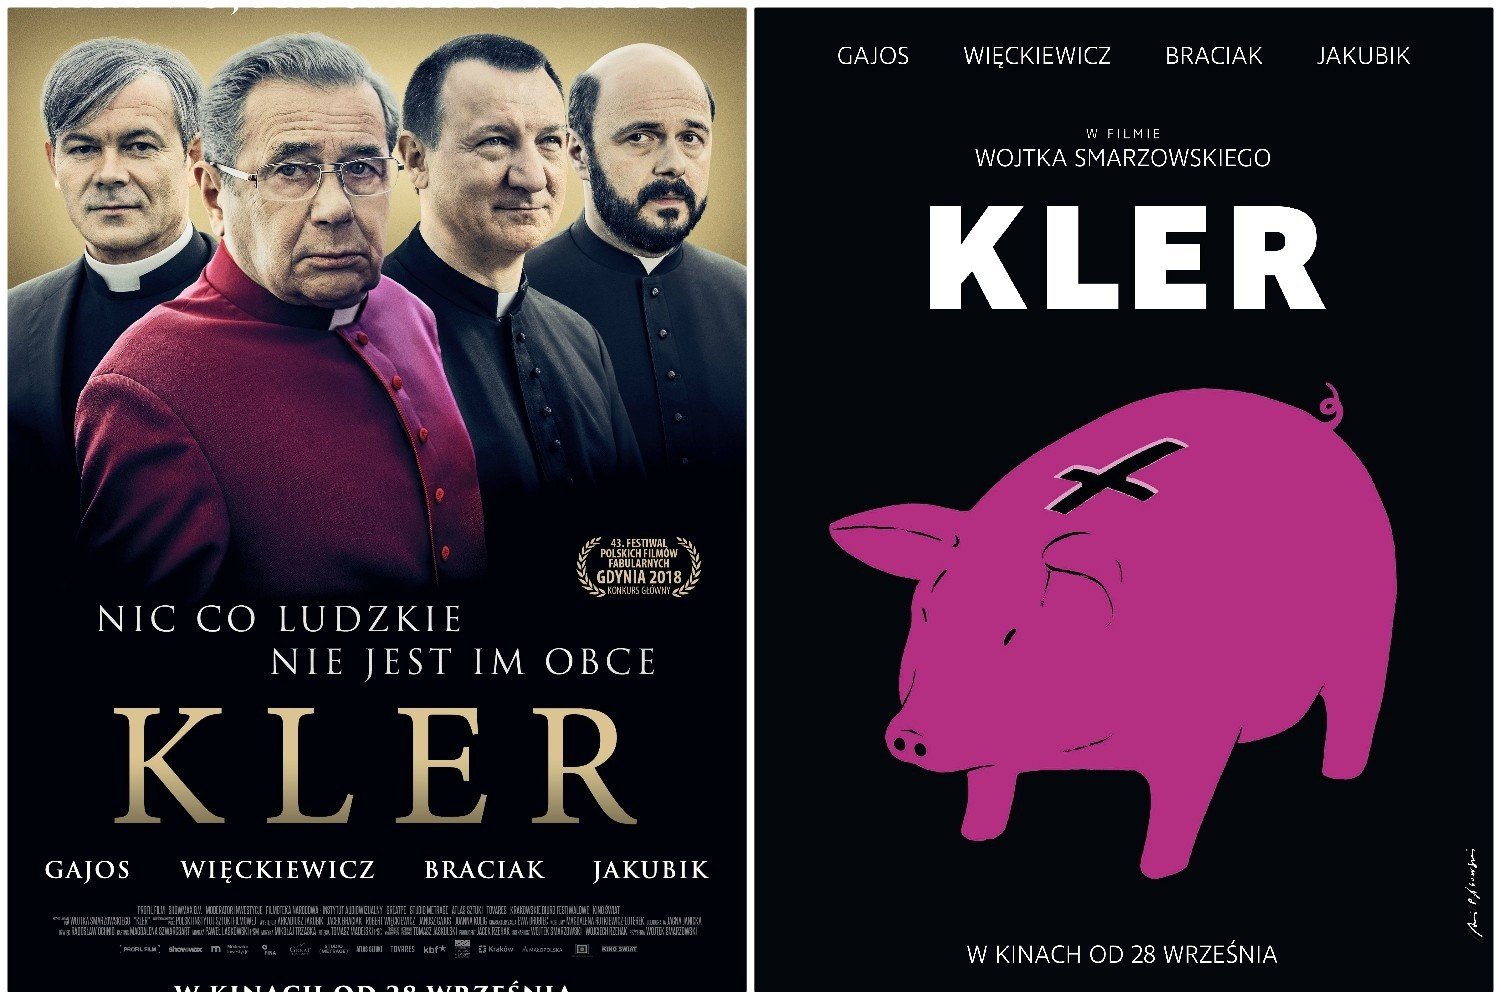 935 tys. widzów obejrzało film „Kler” podczas weekendu otwarcia –  historyczny rekord w polskim kinie na przestrzeni ostatnich 30 lat! |  Gazeta Lubuska